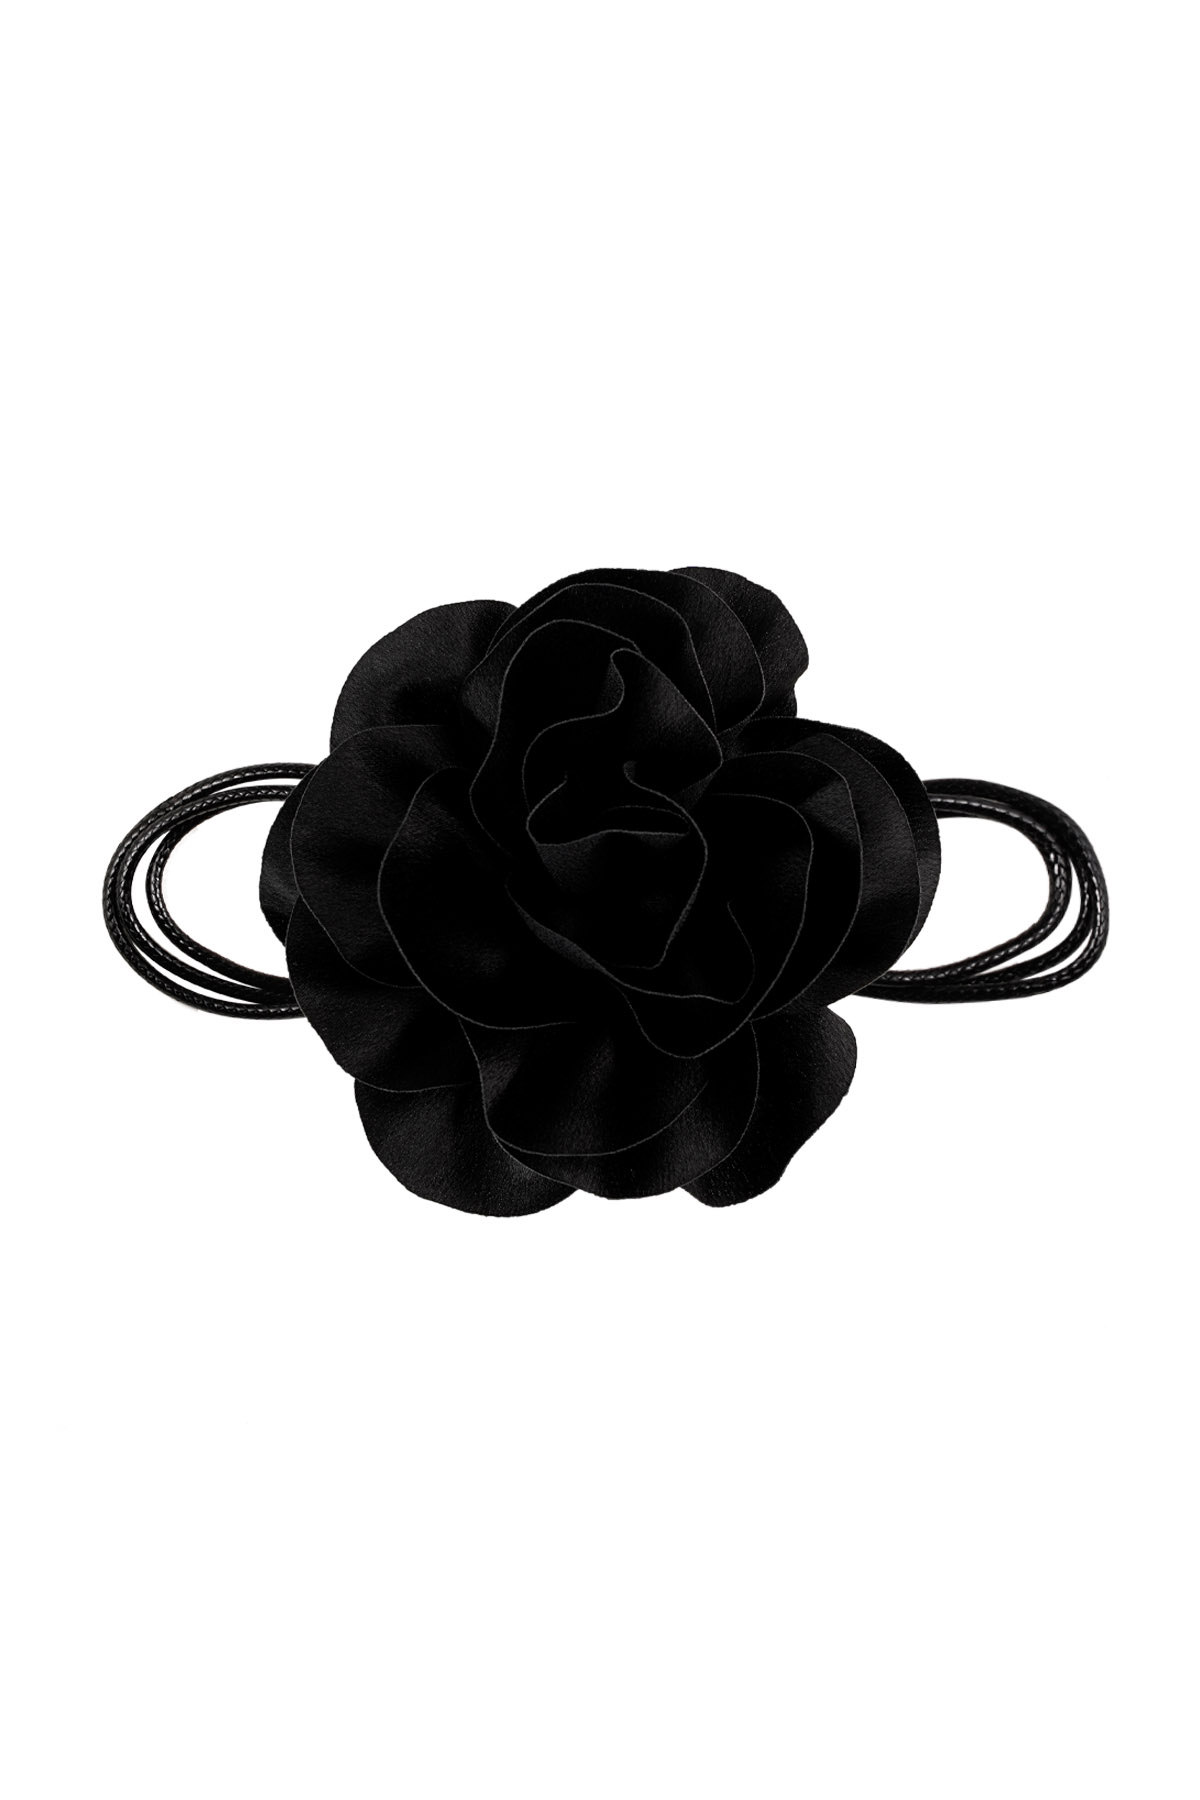 Collana corda fiore lucido - nero 